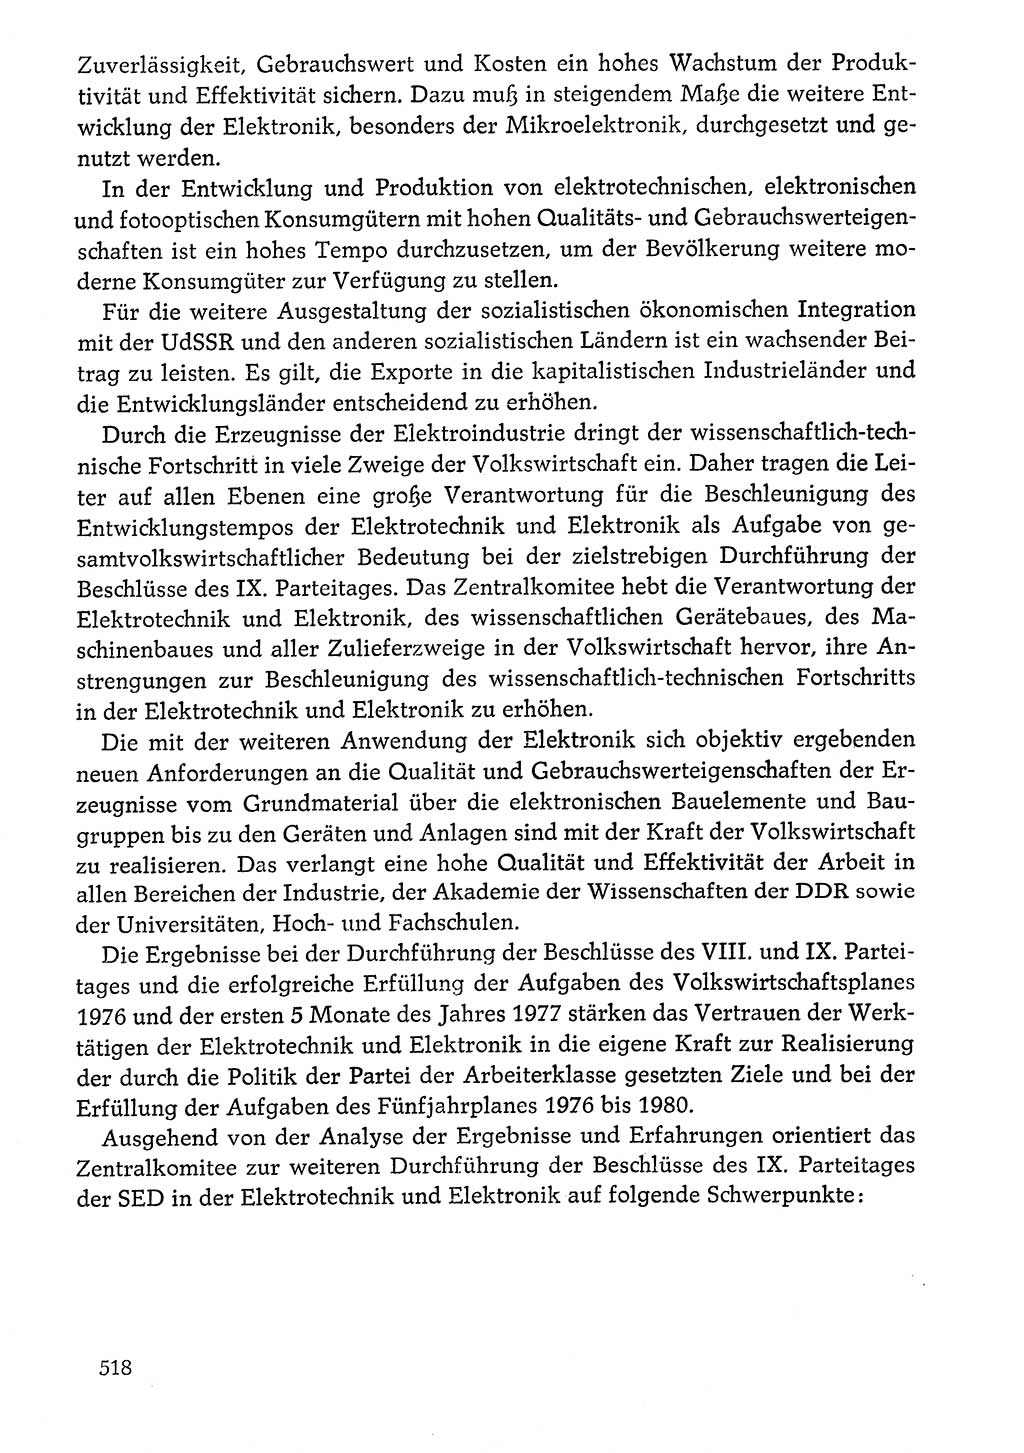 Dokumente der Sozialistischen Einheitspartei Deutschlands (SED) [Deutsche Demokratische Republik (DDR)] 1976-1977, Seite 518 (Dok. SED DDR 1976-1977, S. 518)